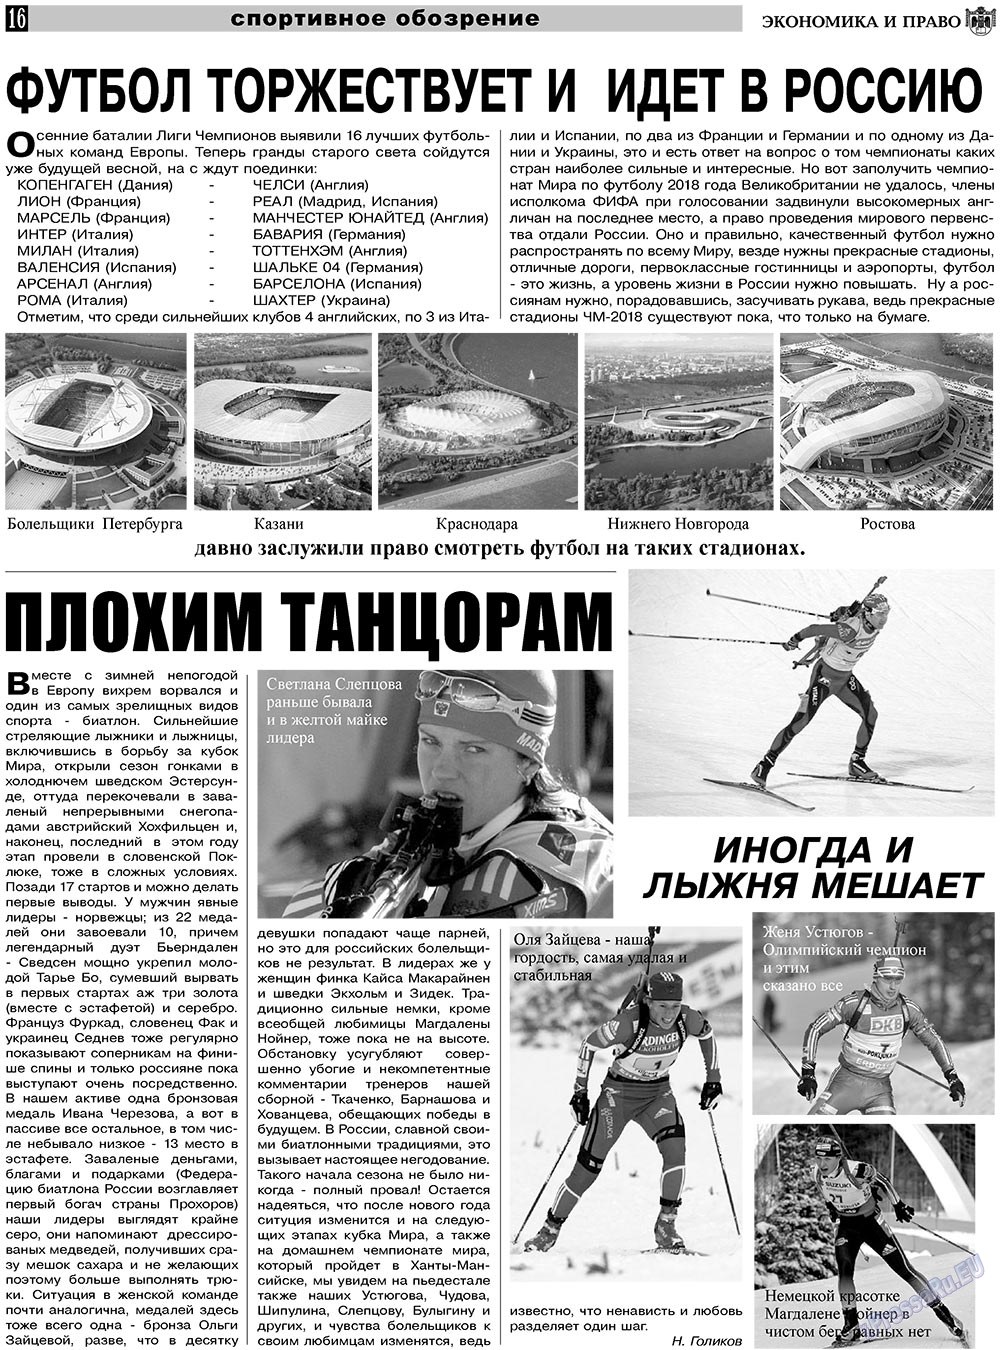 Экономика и право, газета. 2011 №1 стр.16